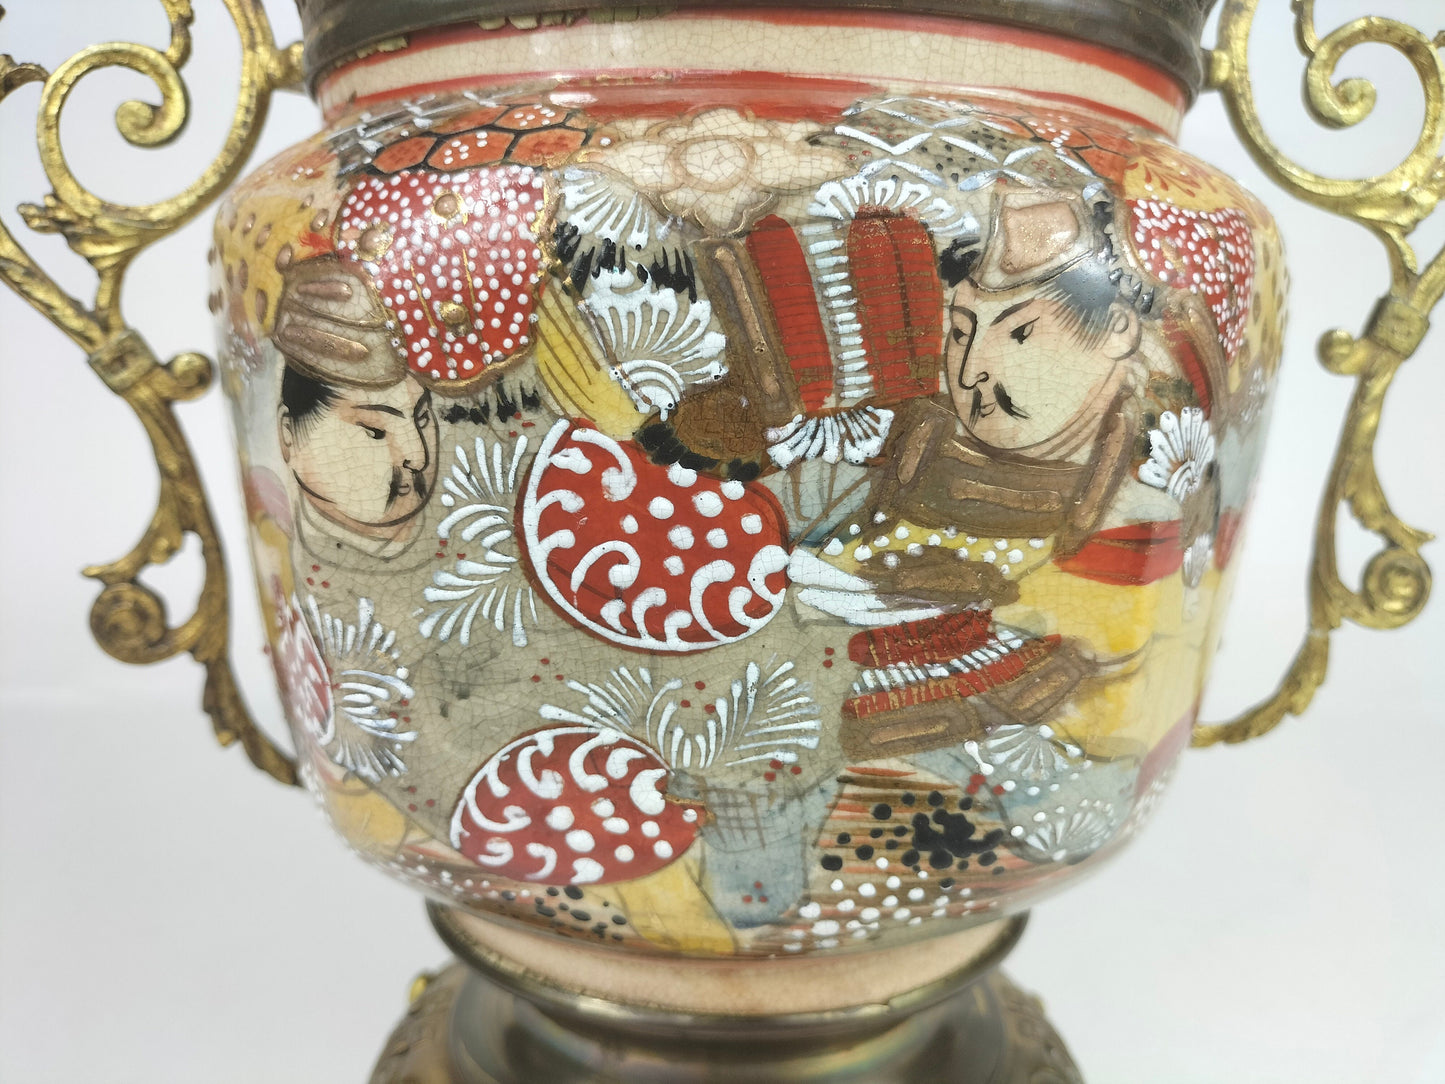 装饰有镀金黄铜的古董日本蜜柑罐 // 19 世纪 - 明治时期